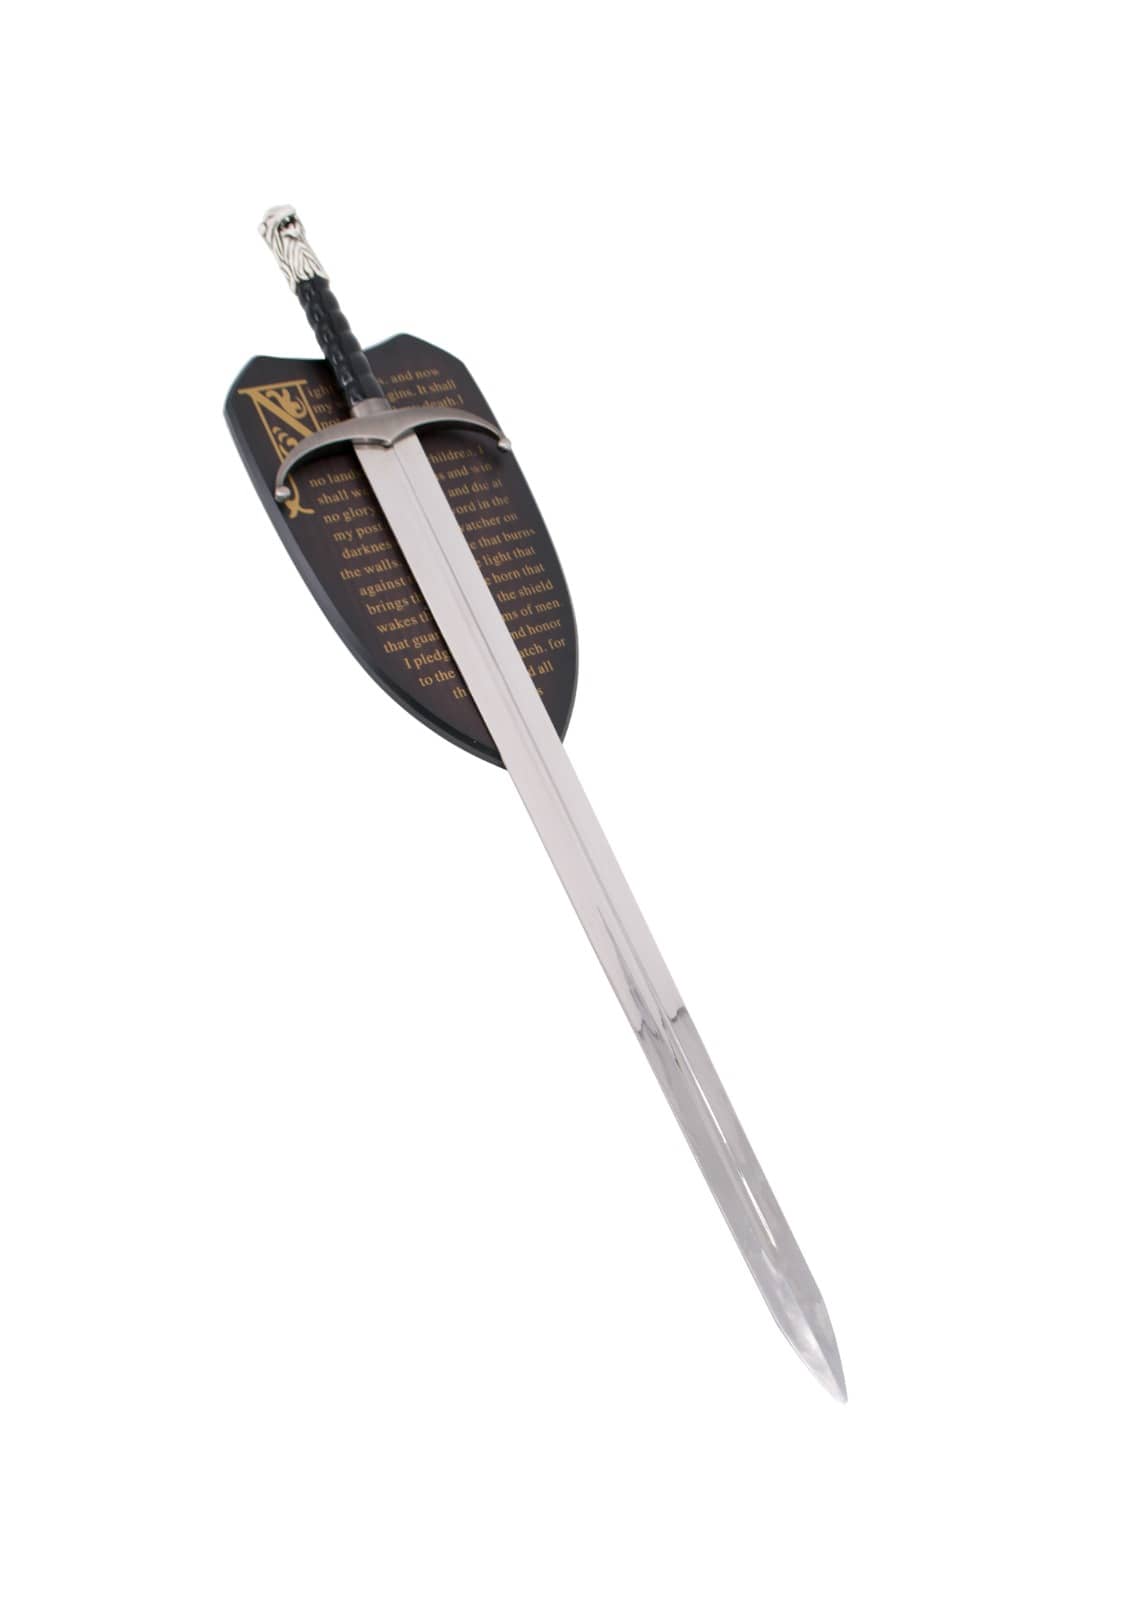 Espada Garra de Jon Nieve de Juego de Tronos como la de la serie de HBO con expositor. Vendida por Espadas y más